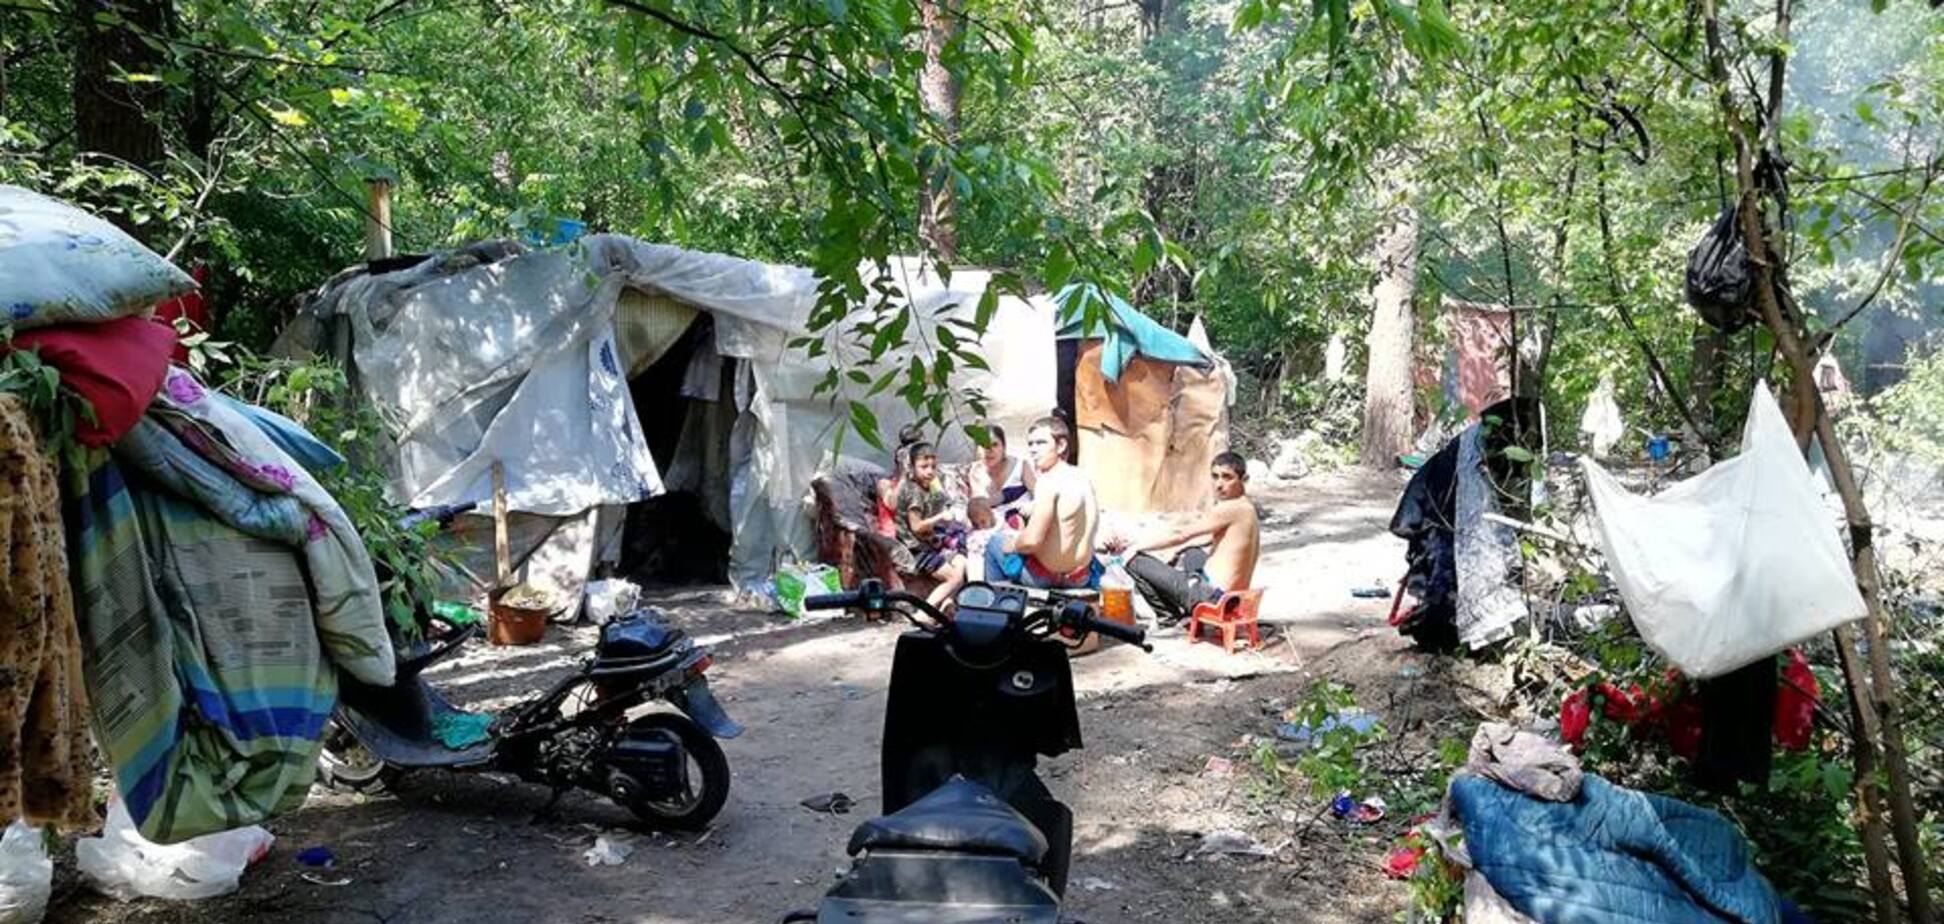 'ЖК 'Айнене': разгром лагеря ромов в Киеве вызвал спор в сети